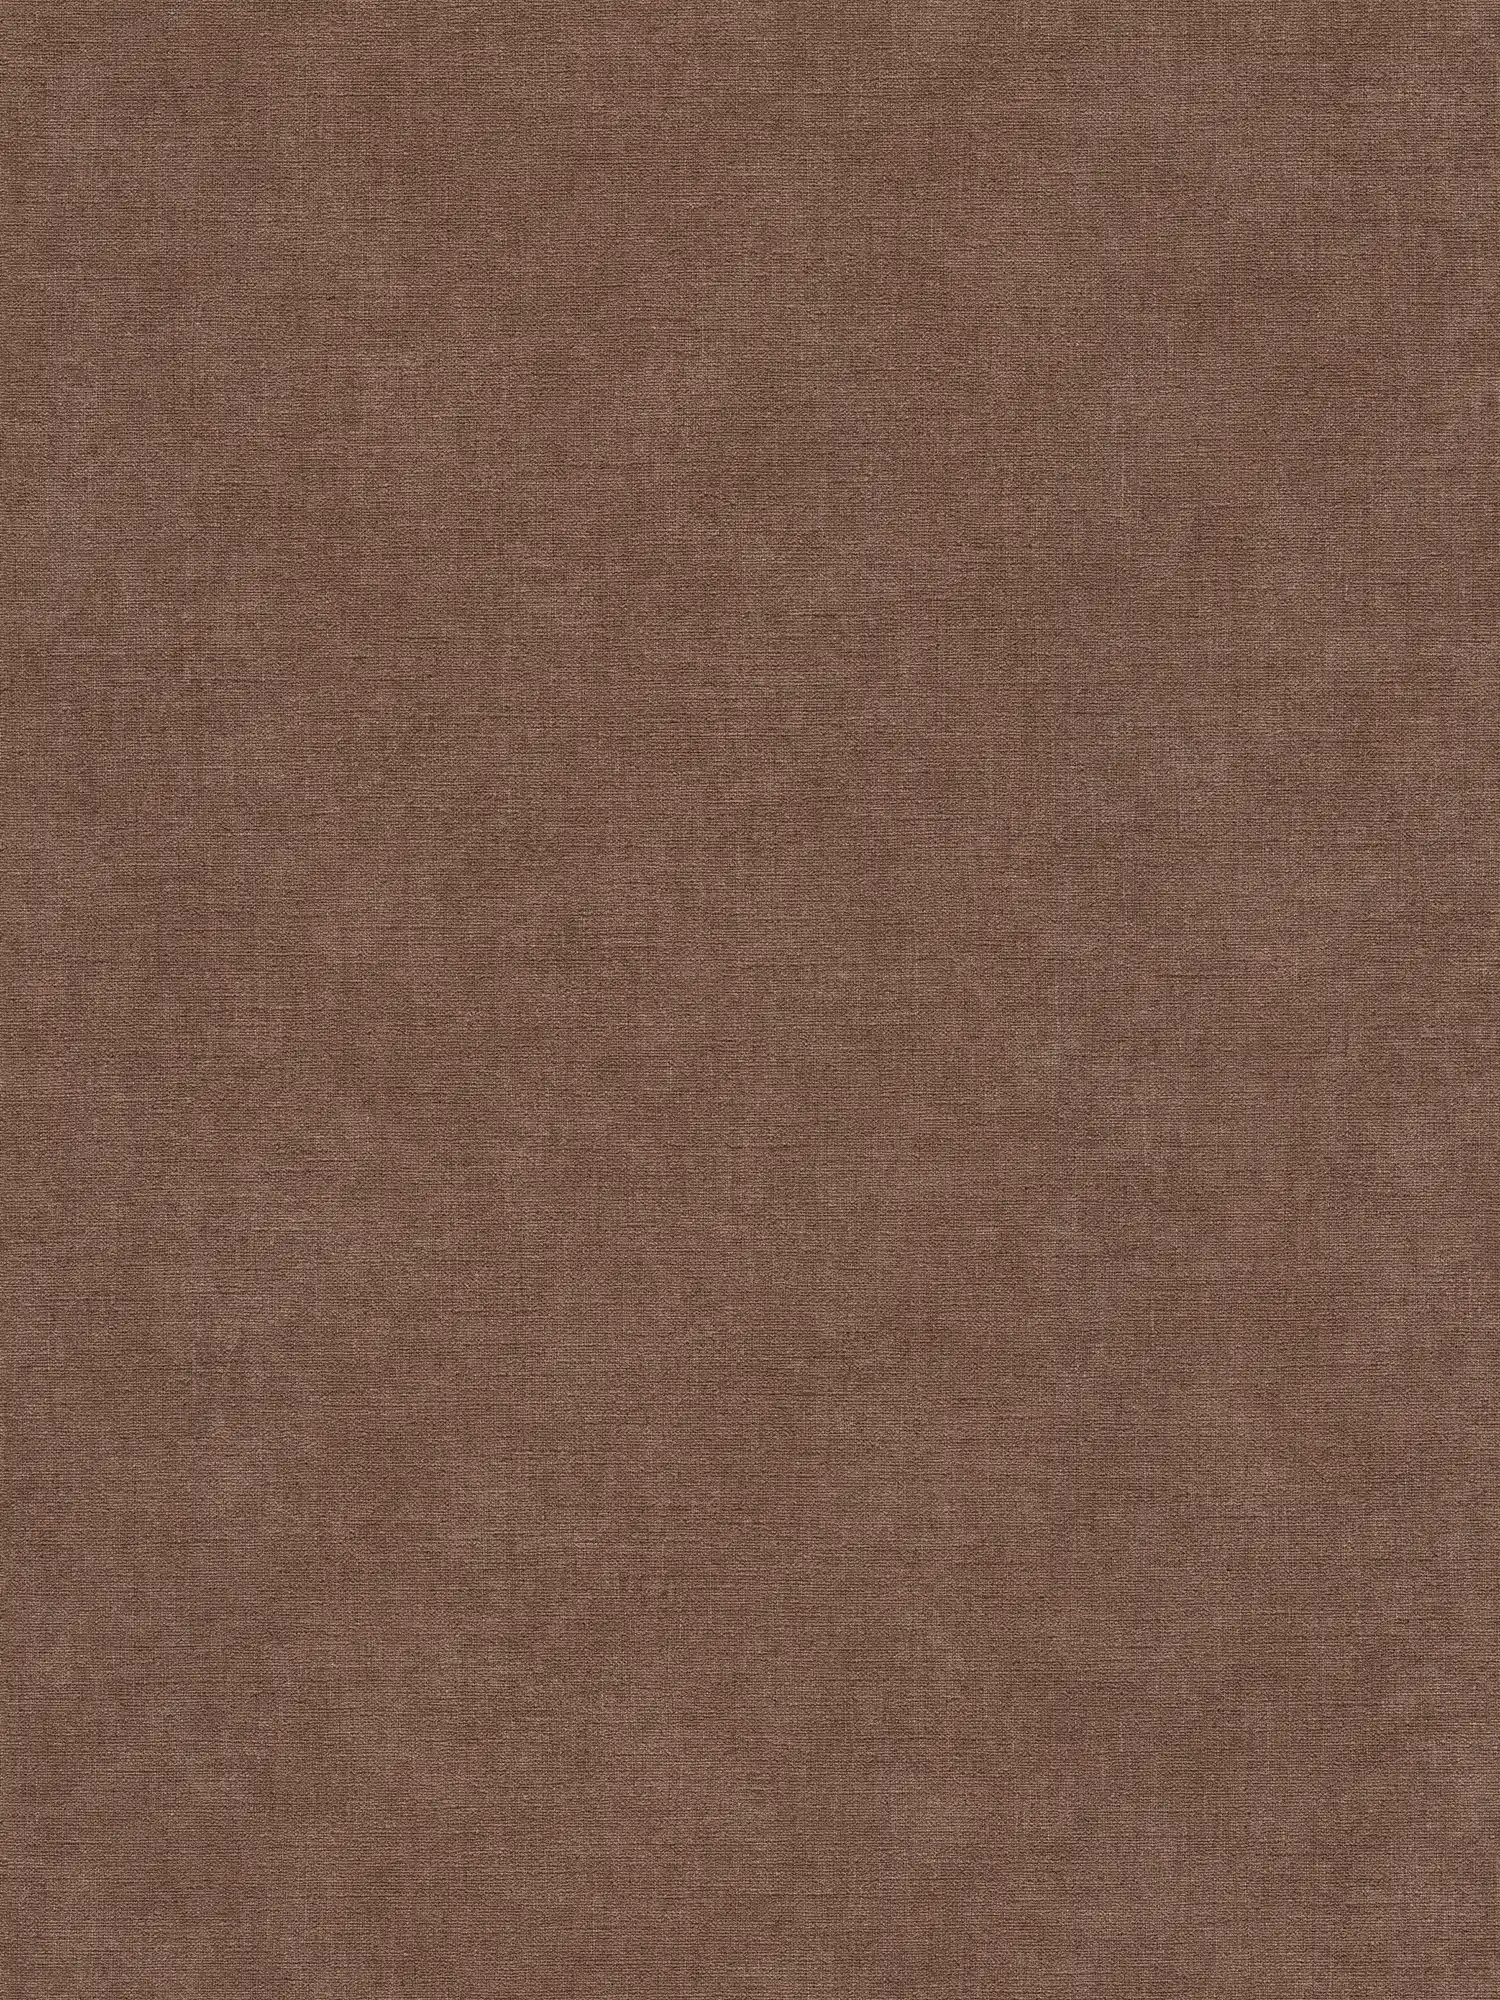 Carta da parati monocolore in tessuto non tessuto con texture leggera - marrone, rosso
